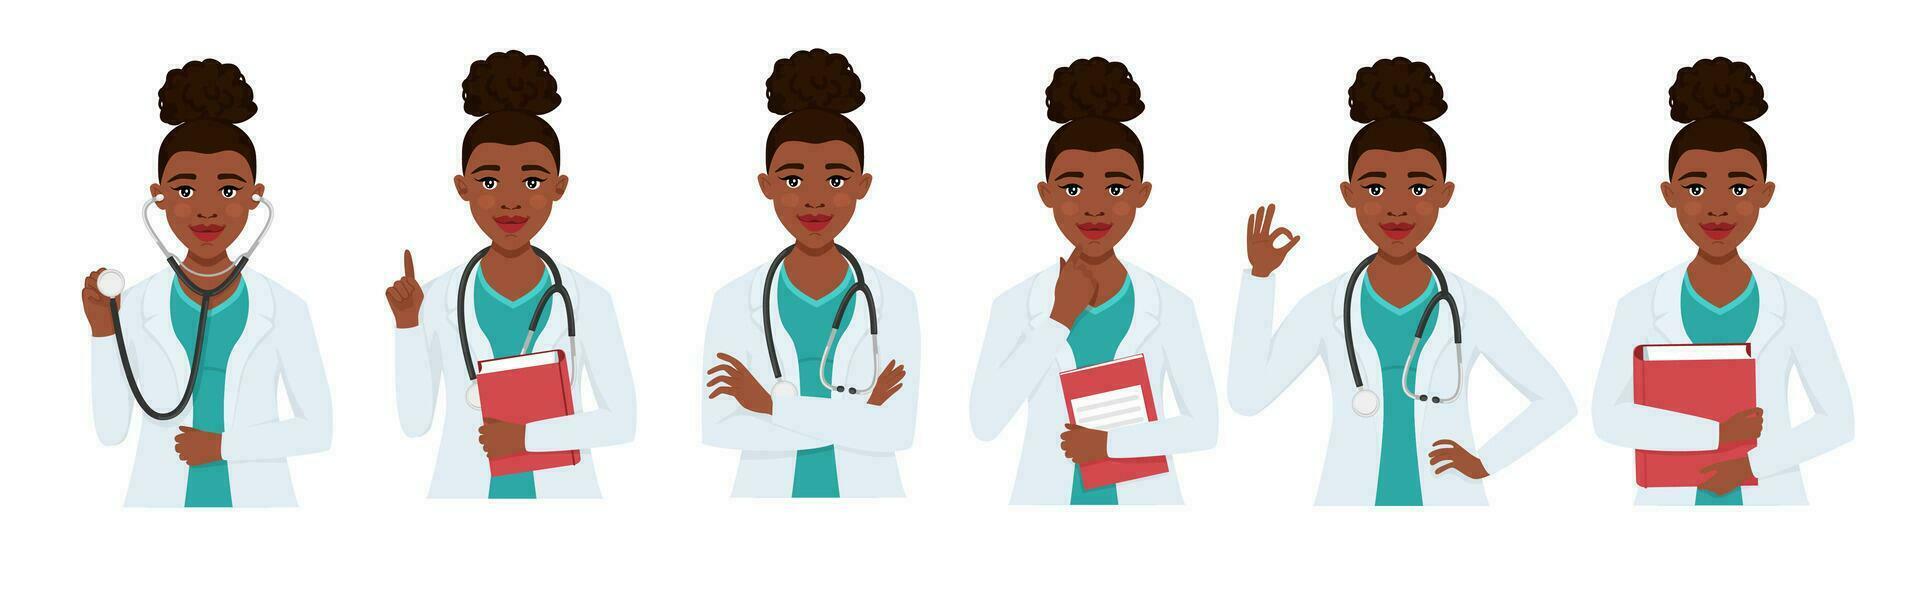 reeks zwart artsen karakter vrouw met stethoscoop. medisch personeel, dokter, therapeut, professioneel ziekenhuis personeel. vector illustratie.